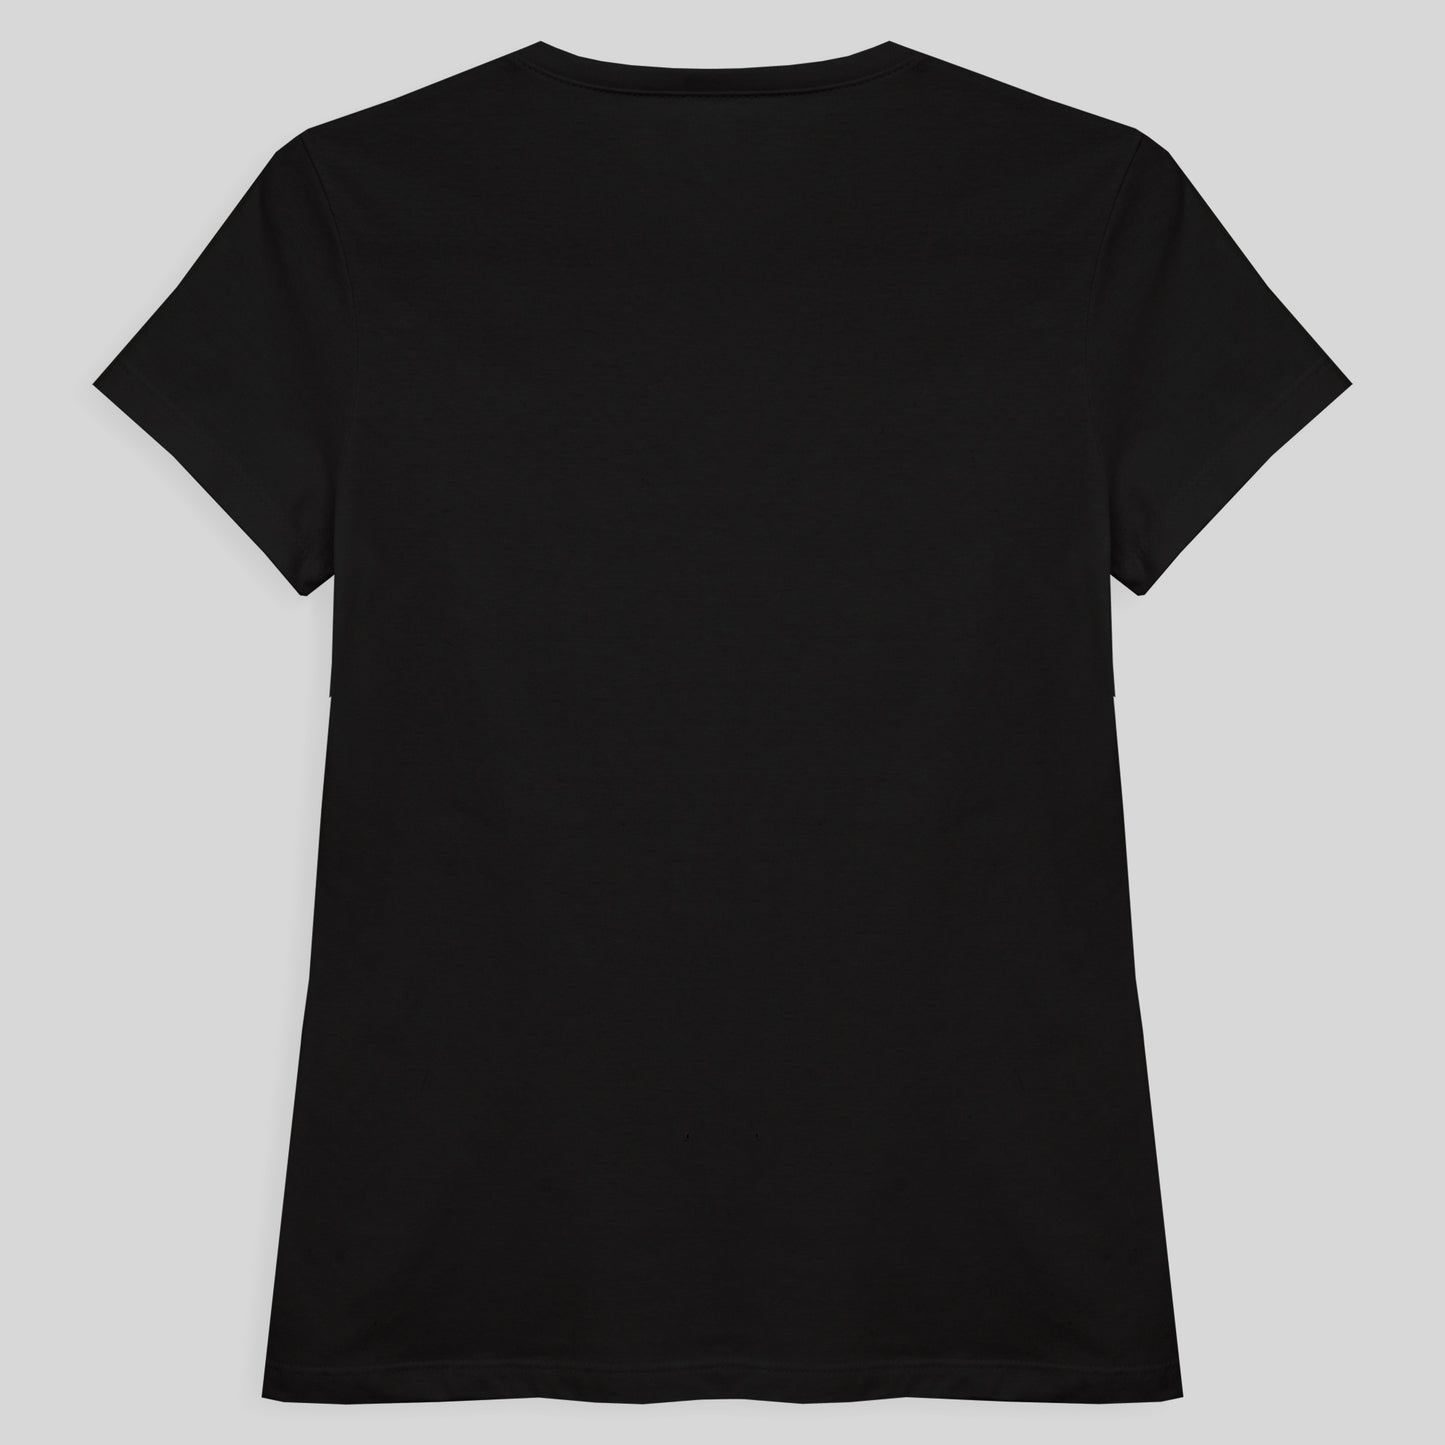 Camiseta Slim Feminina - Preto